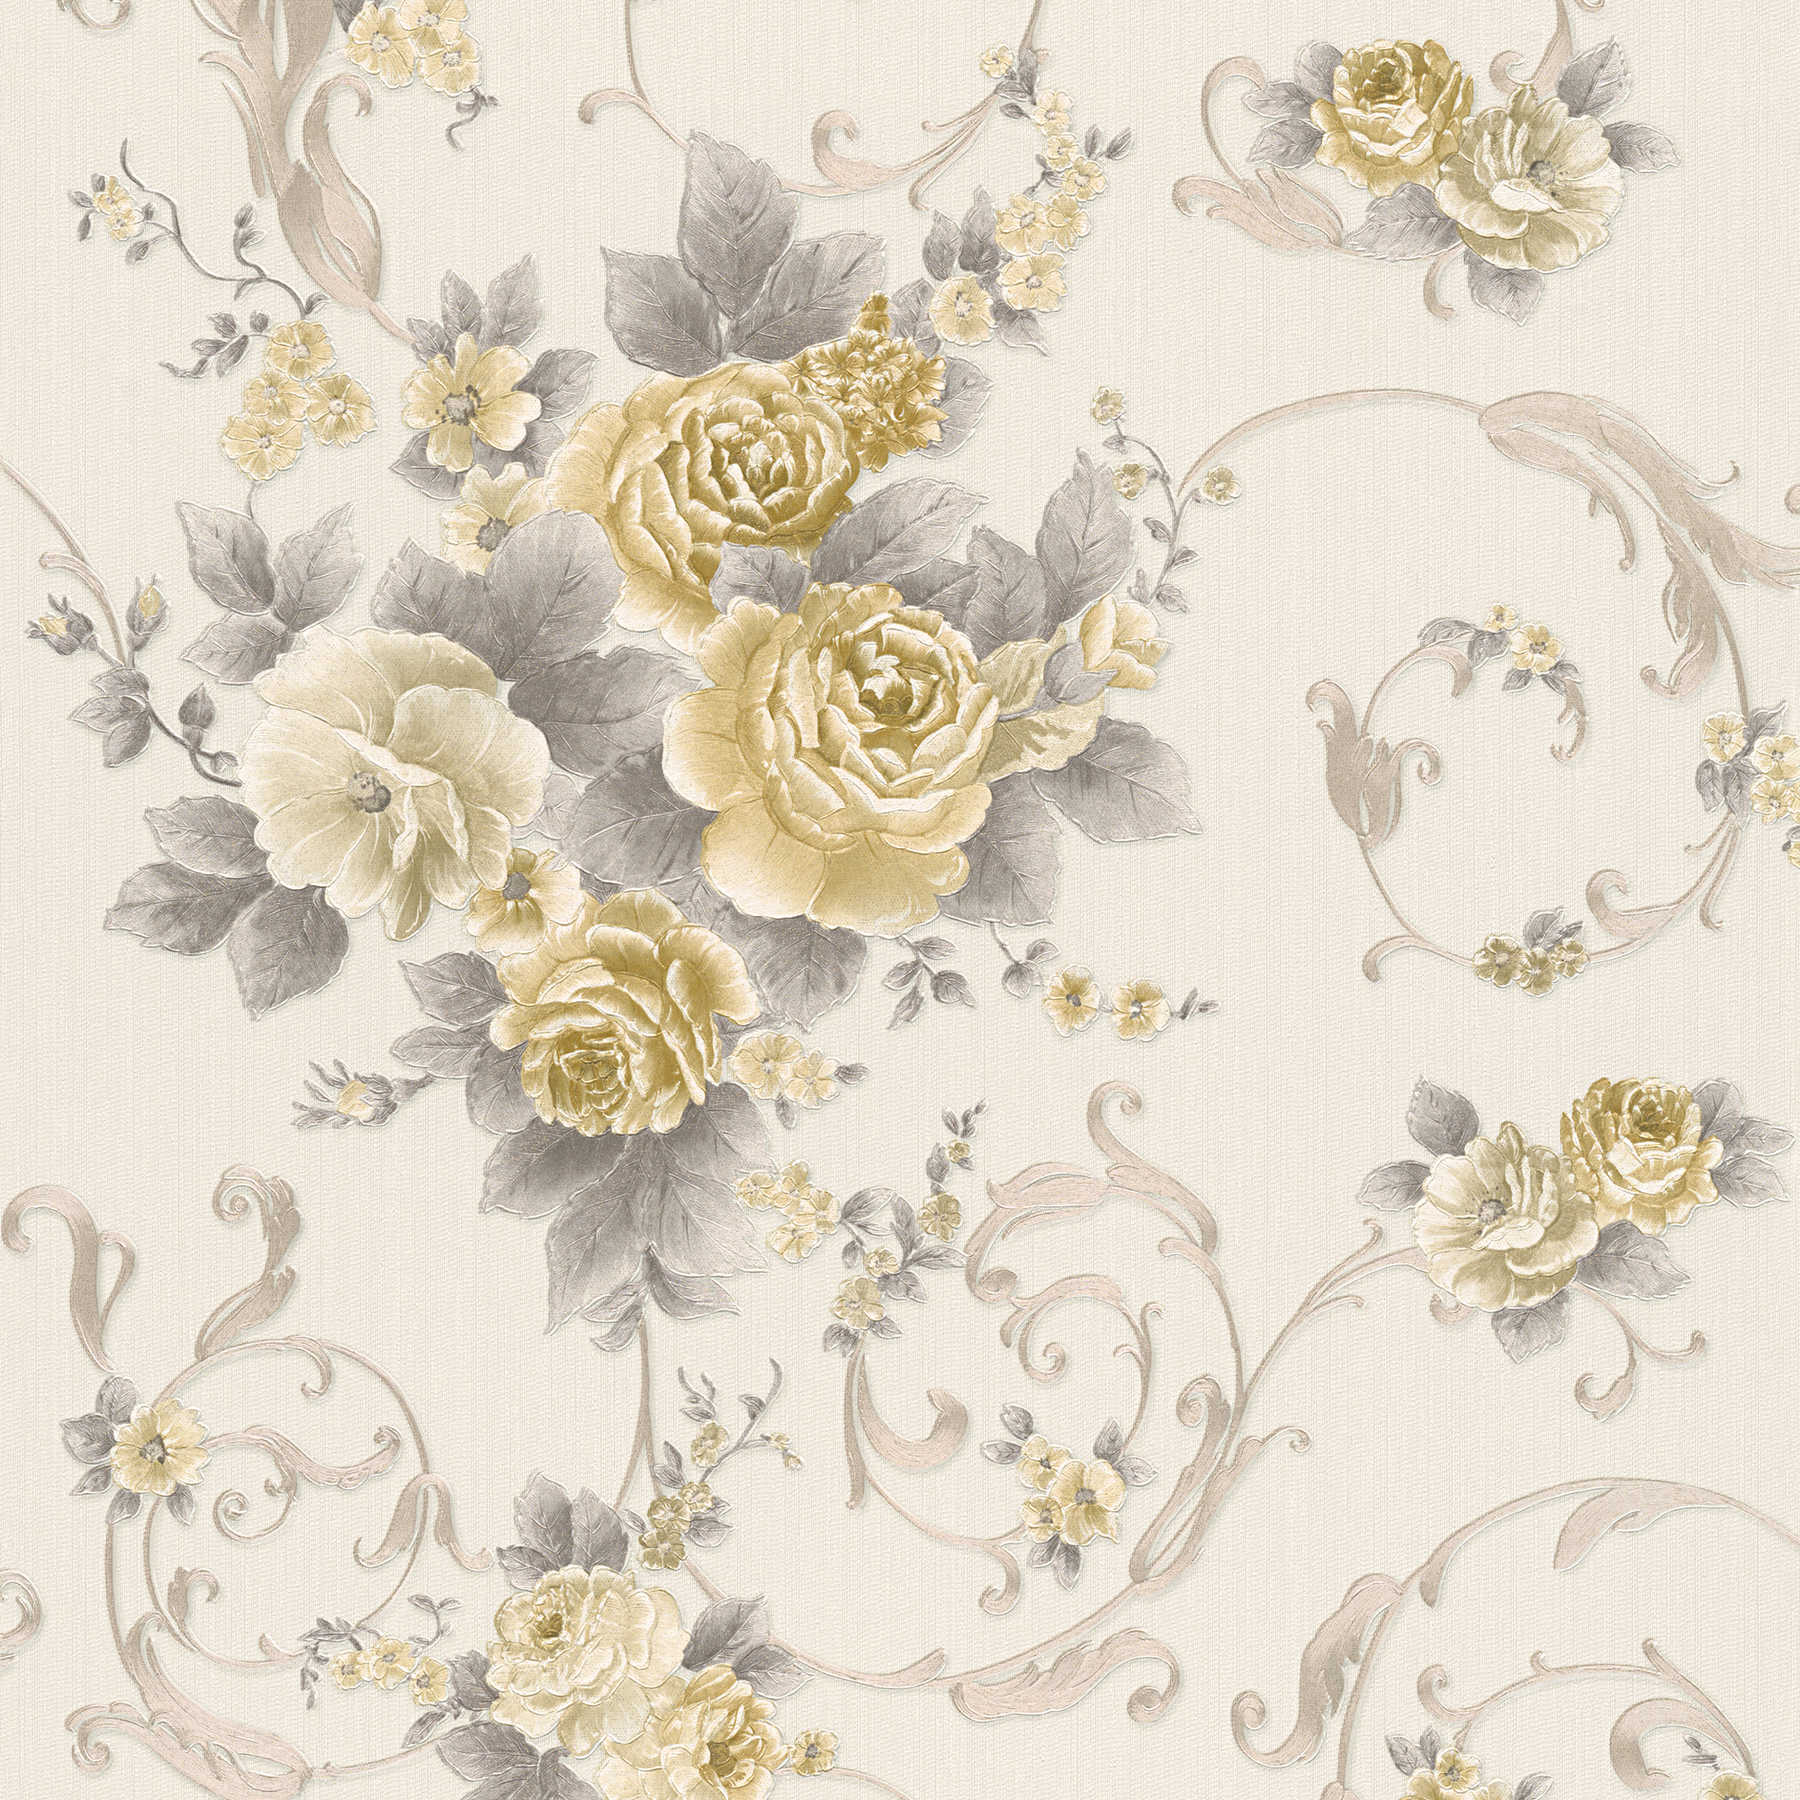 Rosenblüten-Tapete mit Metallic-Effekt im Landhausstil – Grau, Gold, Weiß
